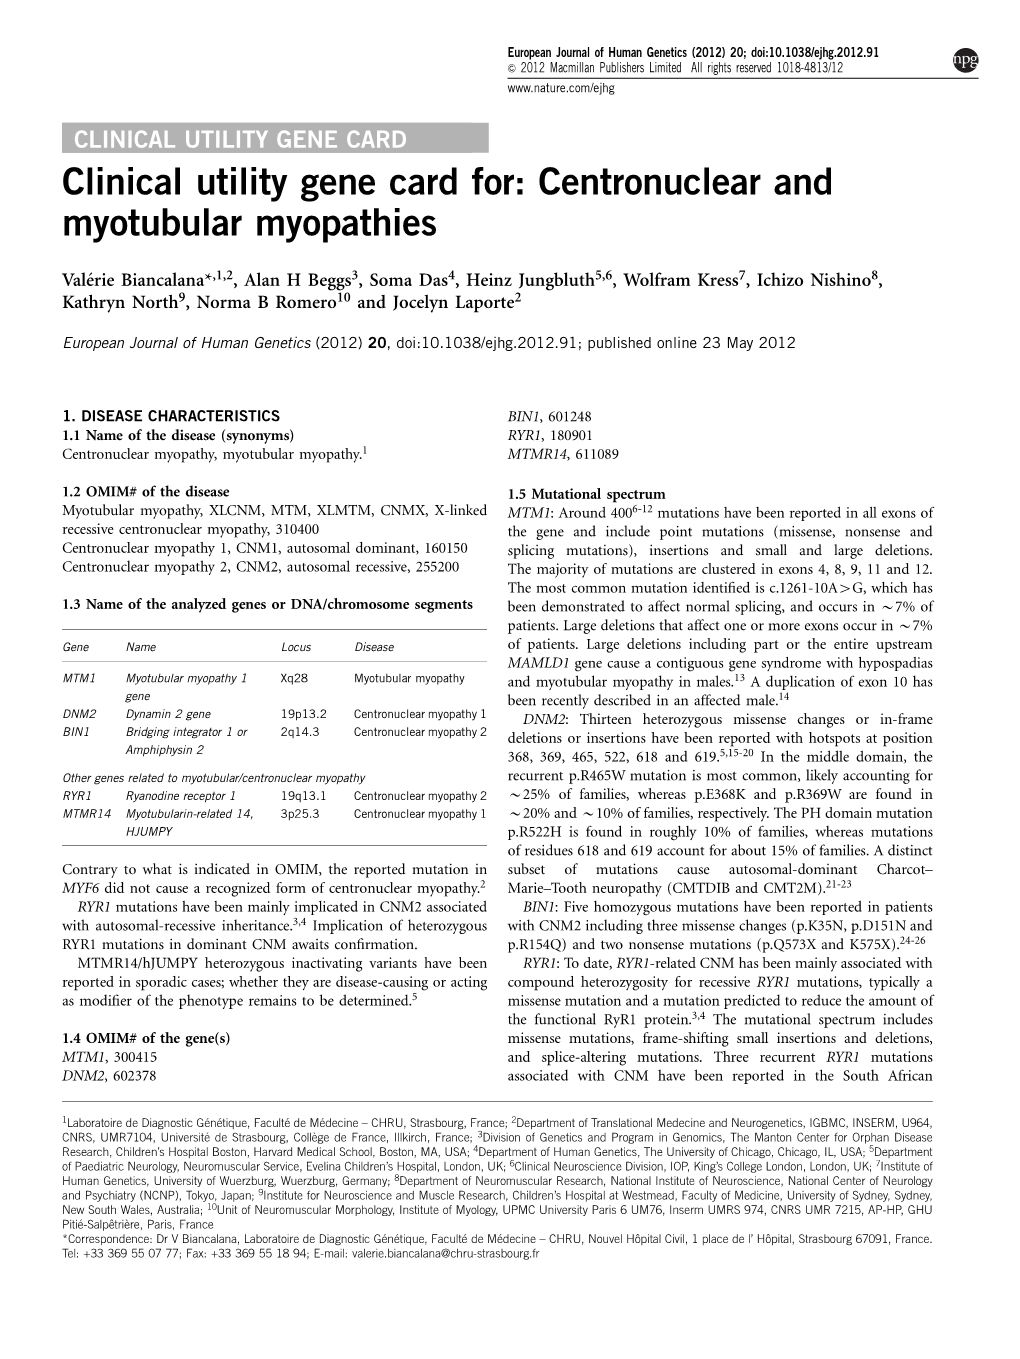 Clinical Utility Gene Card For: Centronuclear and Myotubular Myopathies